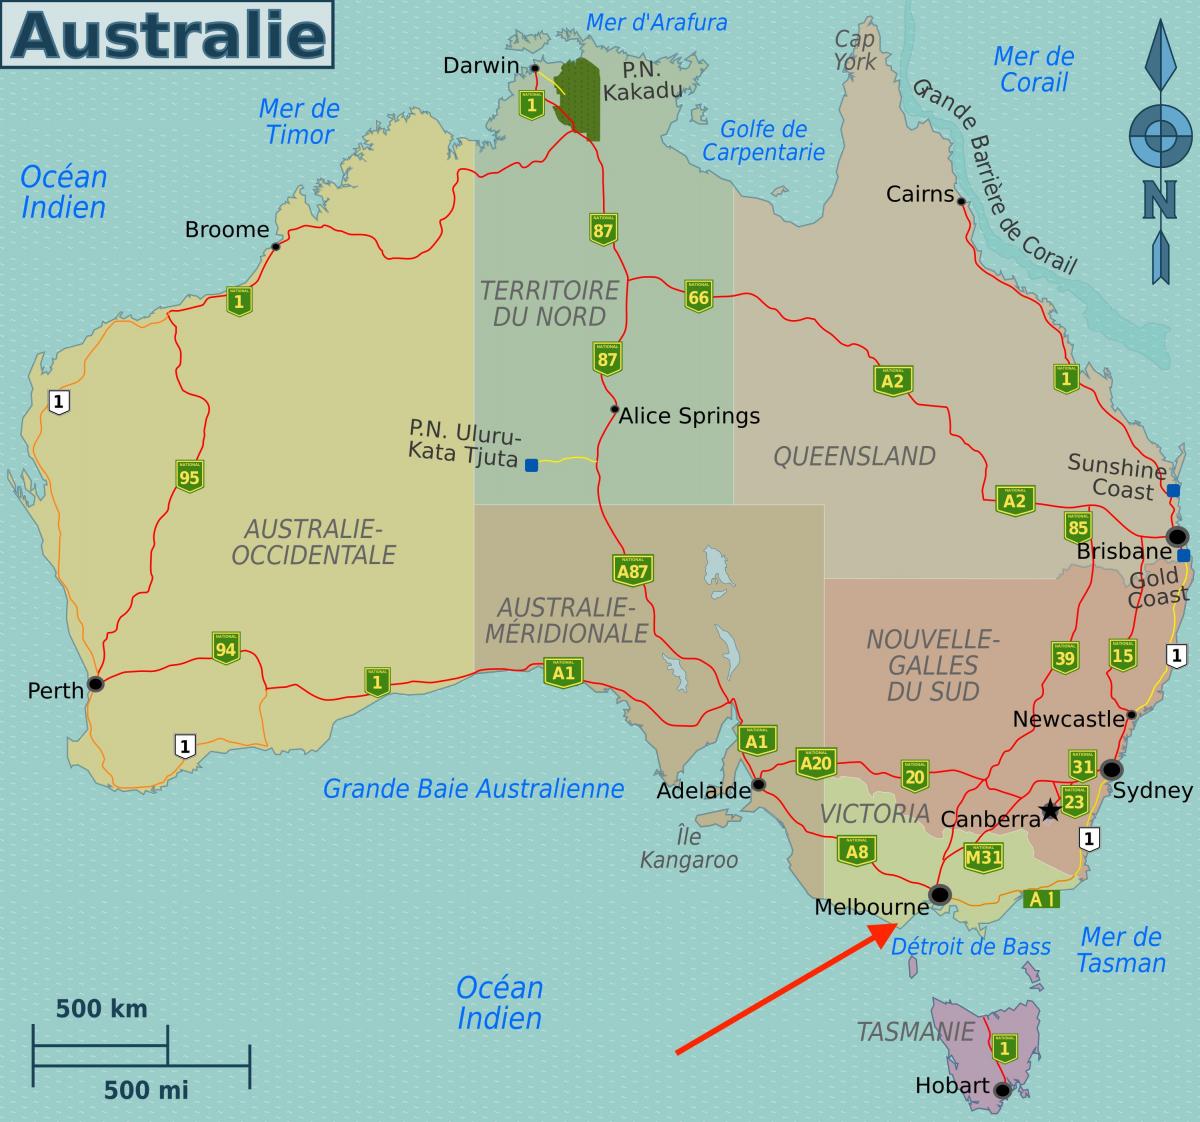 墨尔本 在维多利亚州 - 澳大利亚地图